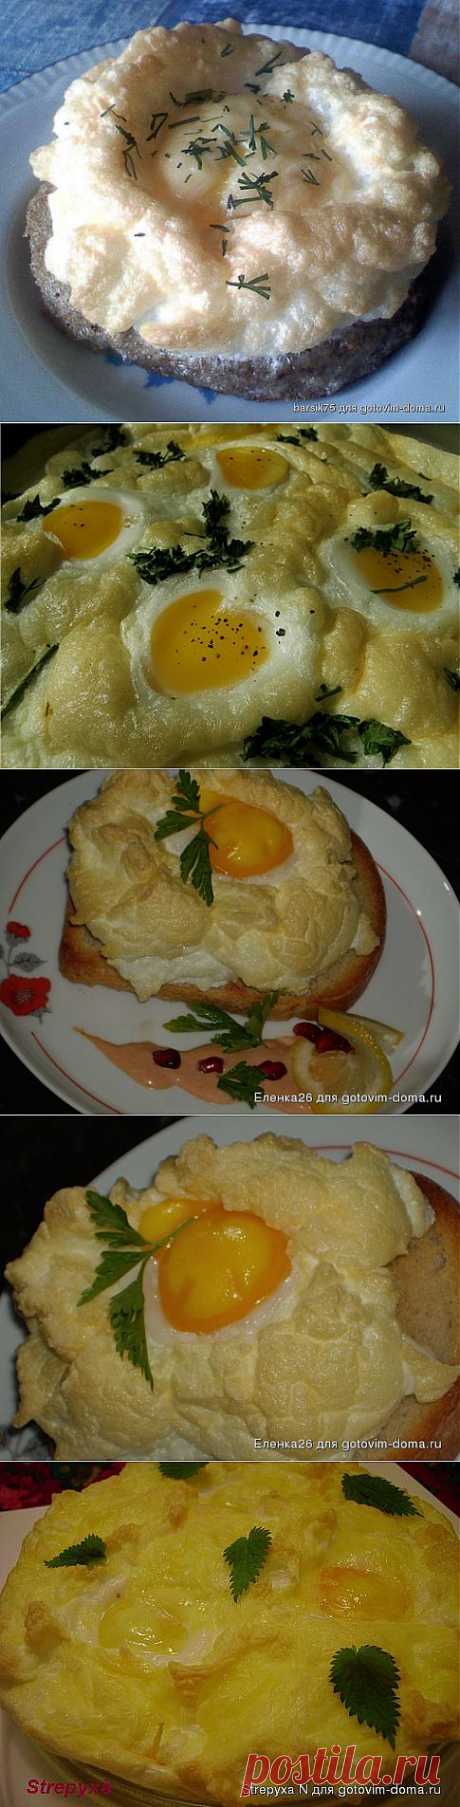 Яйца на завтрак | ВКУСНО ПОЕДИМ!